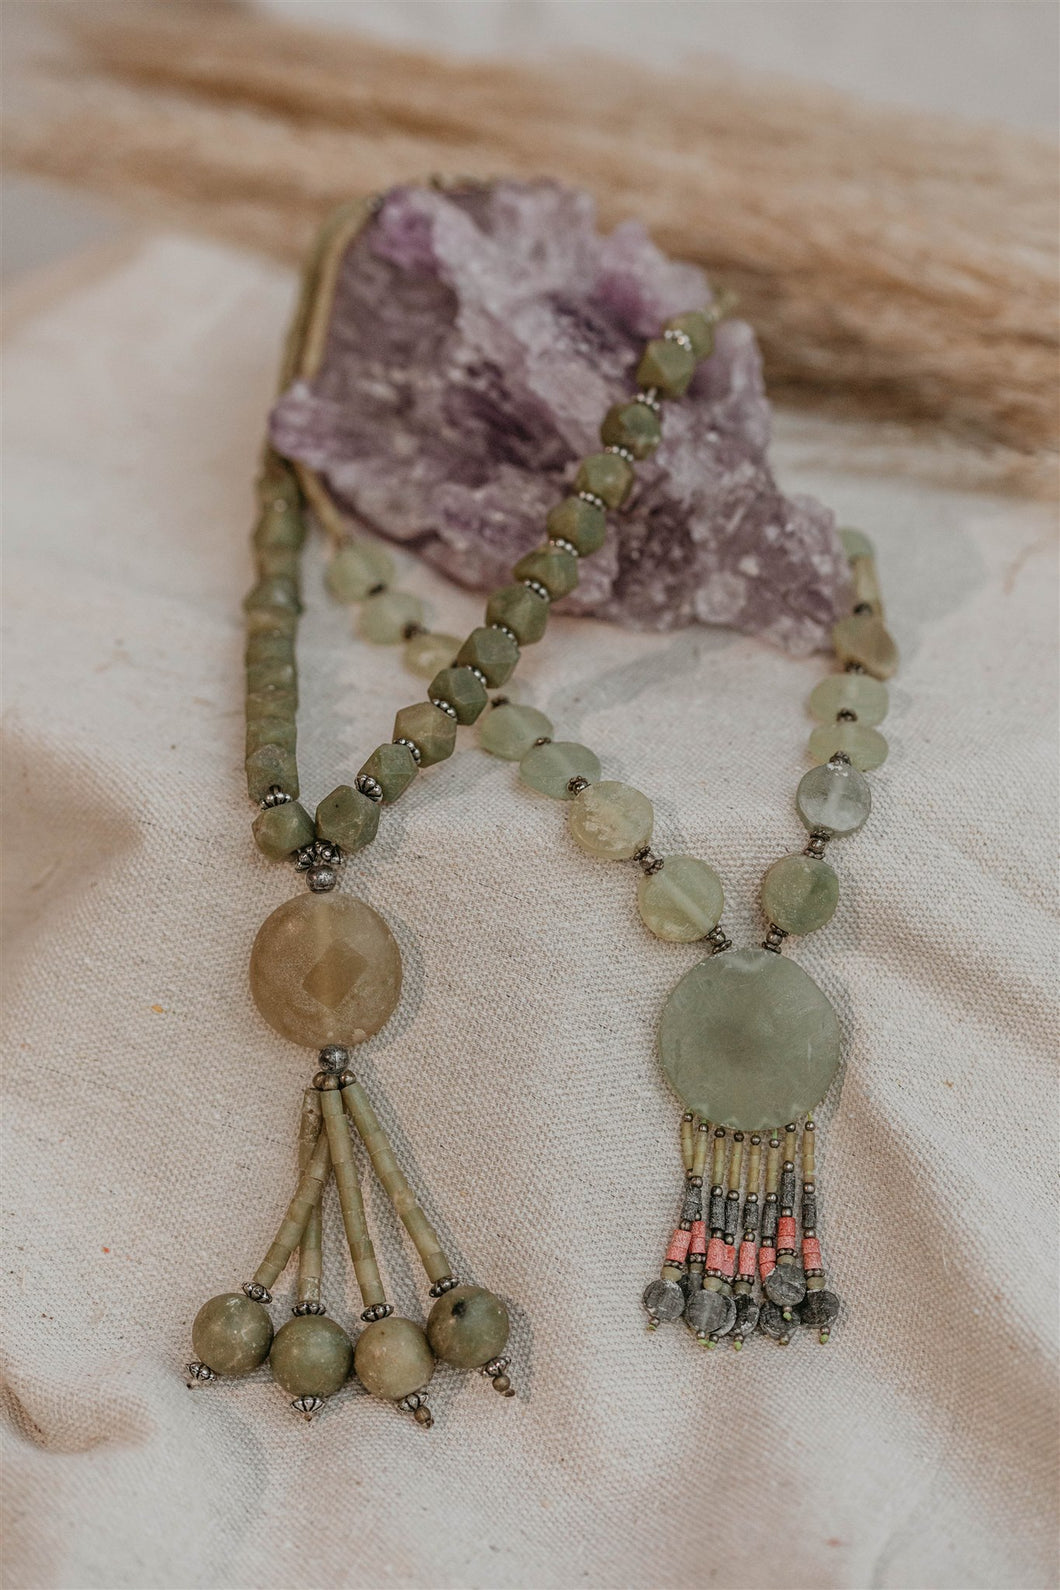 Afgan Jade Necklace